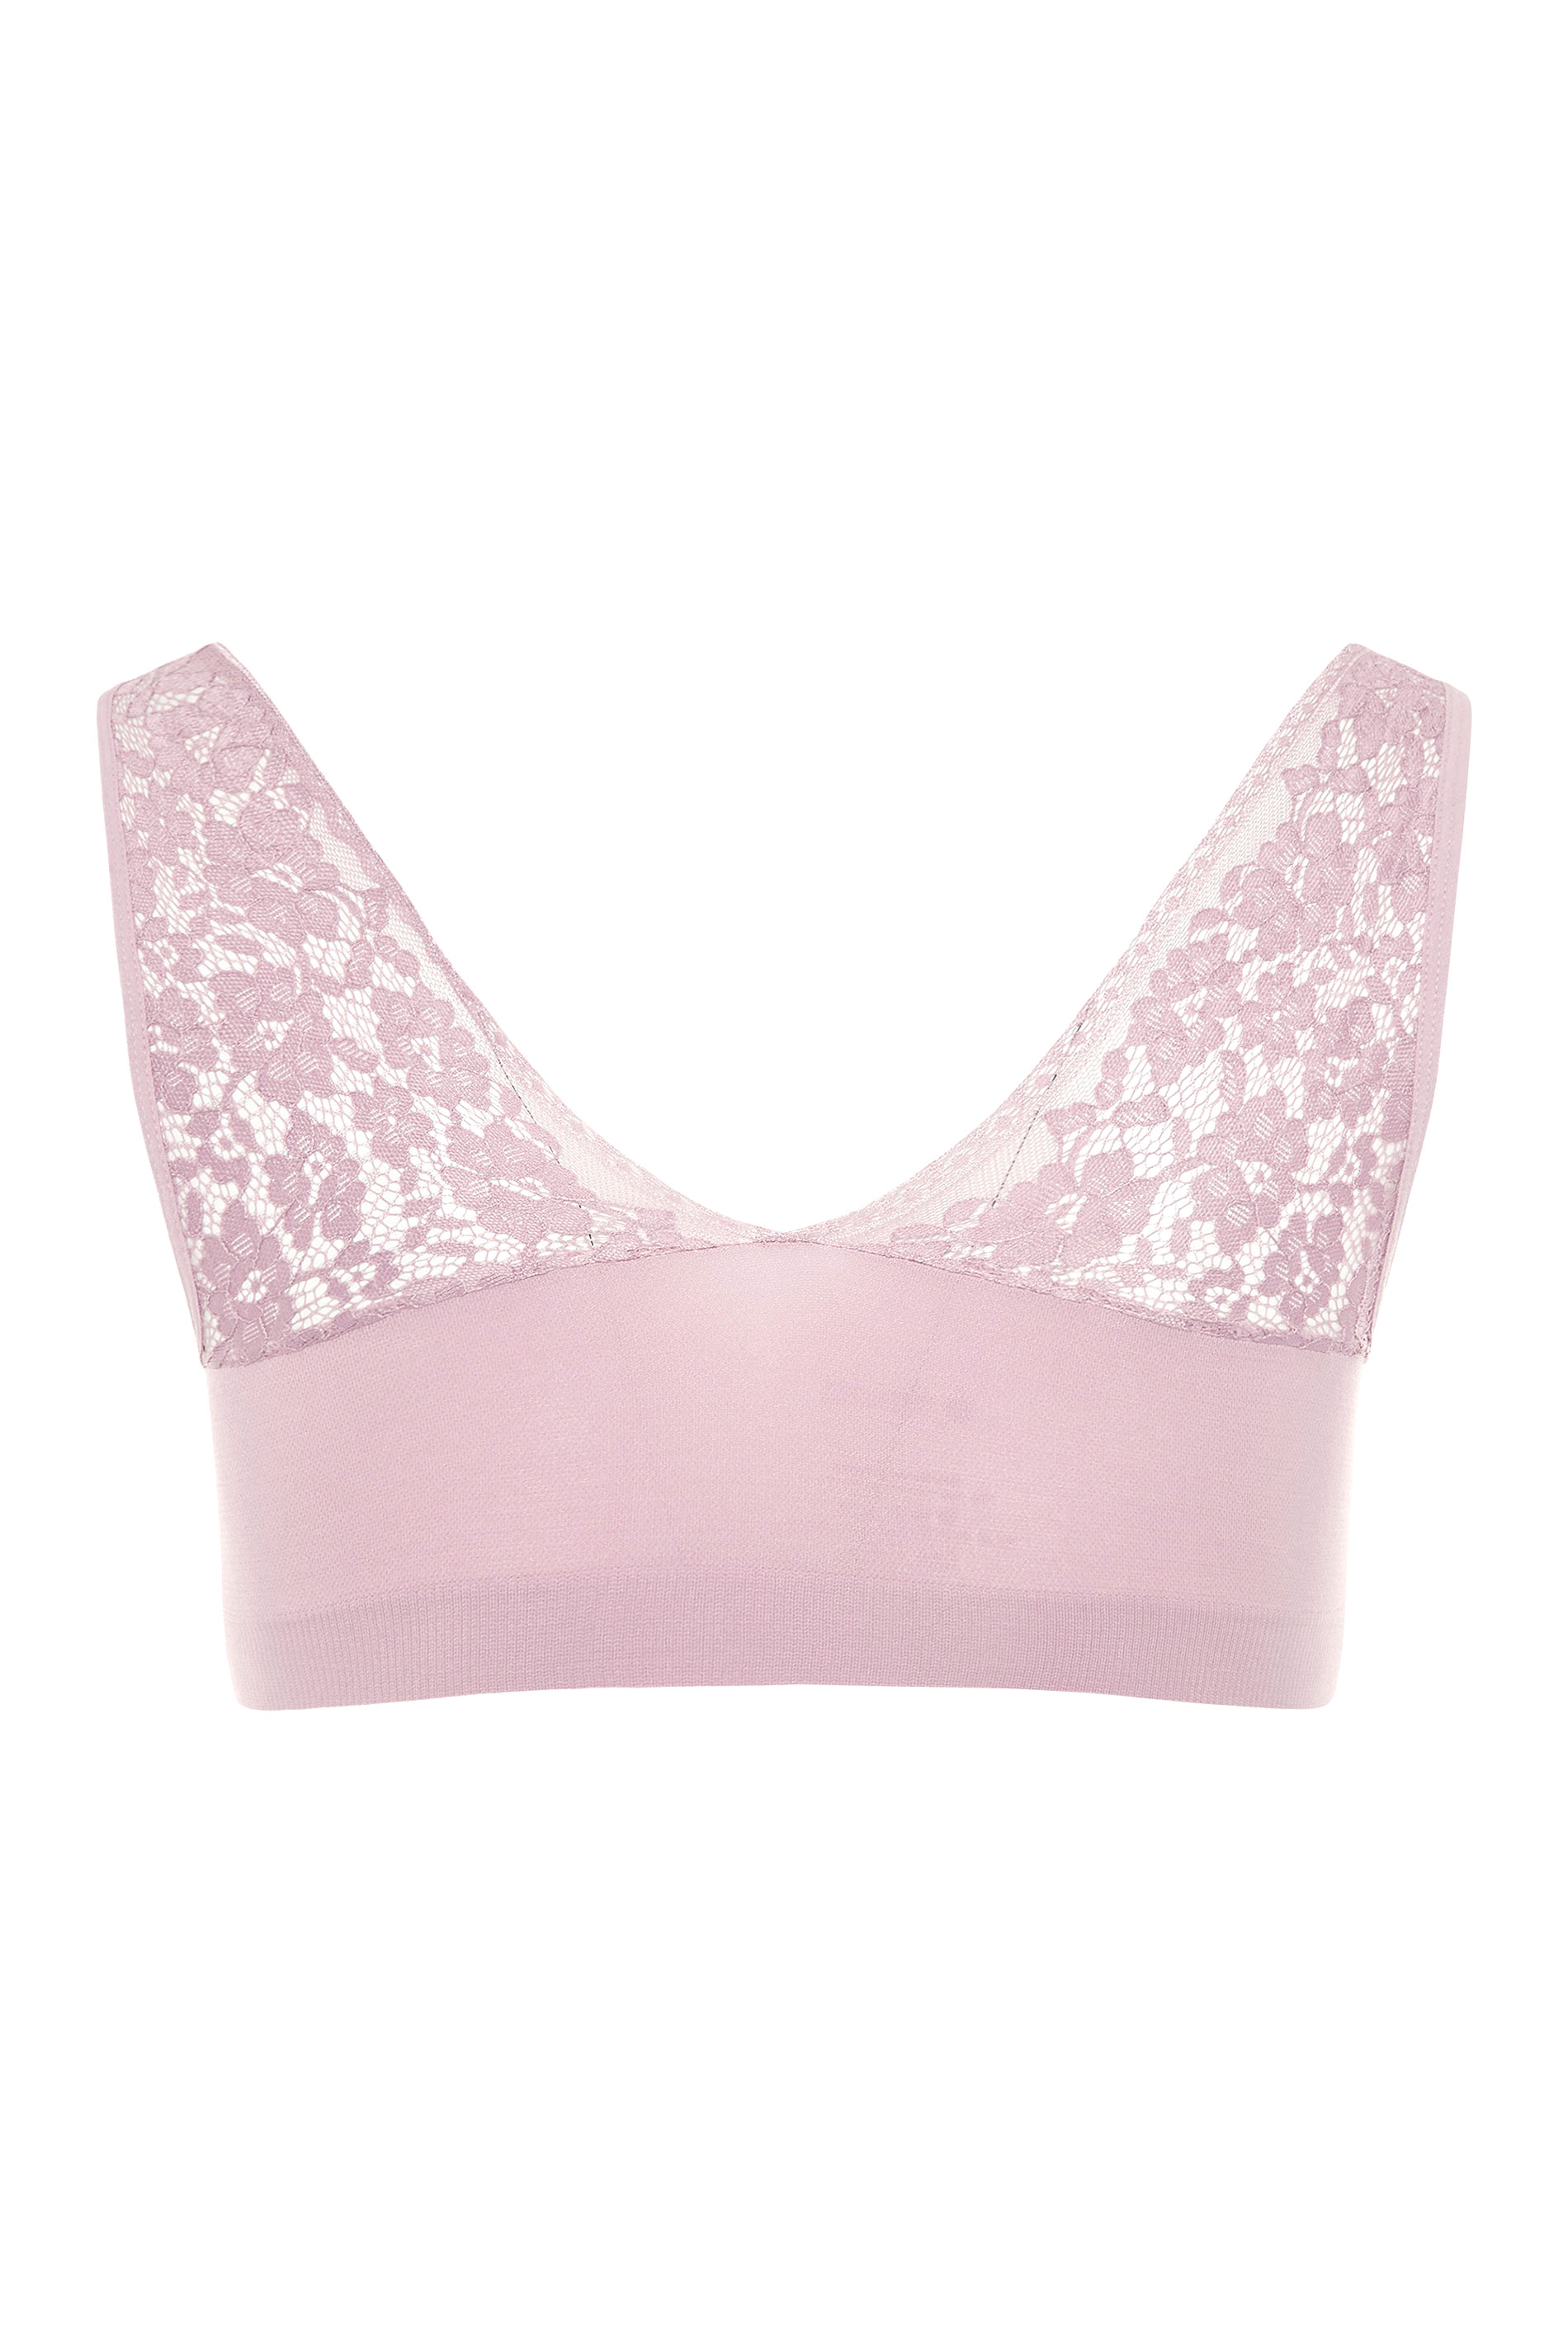 Pretty Secrets/Naturally Close Non-Wired Pink & Blush Bras Size